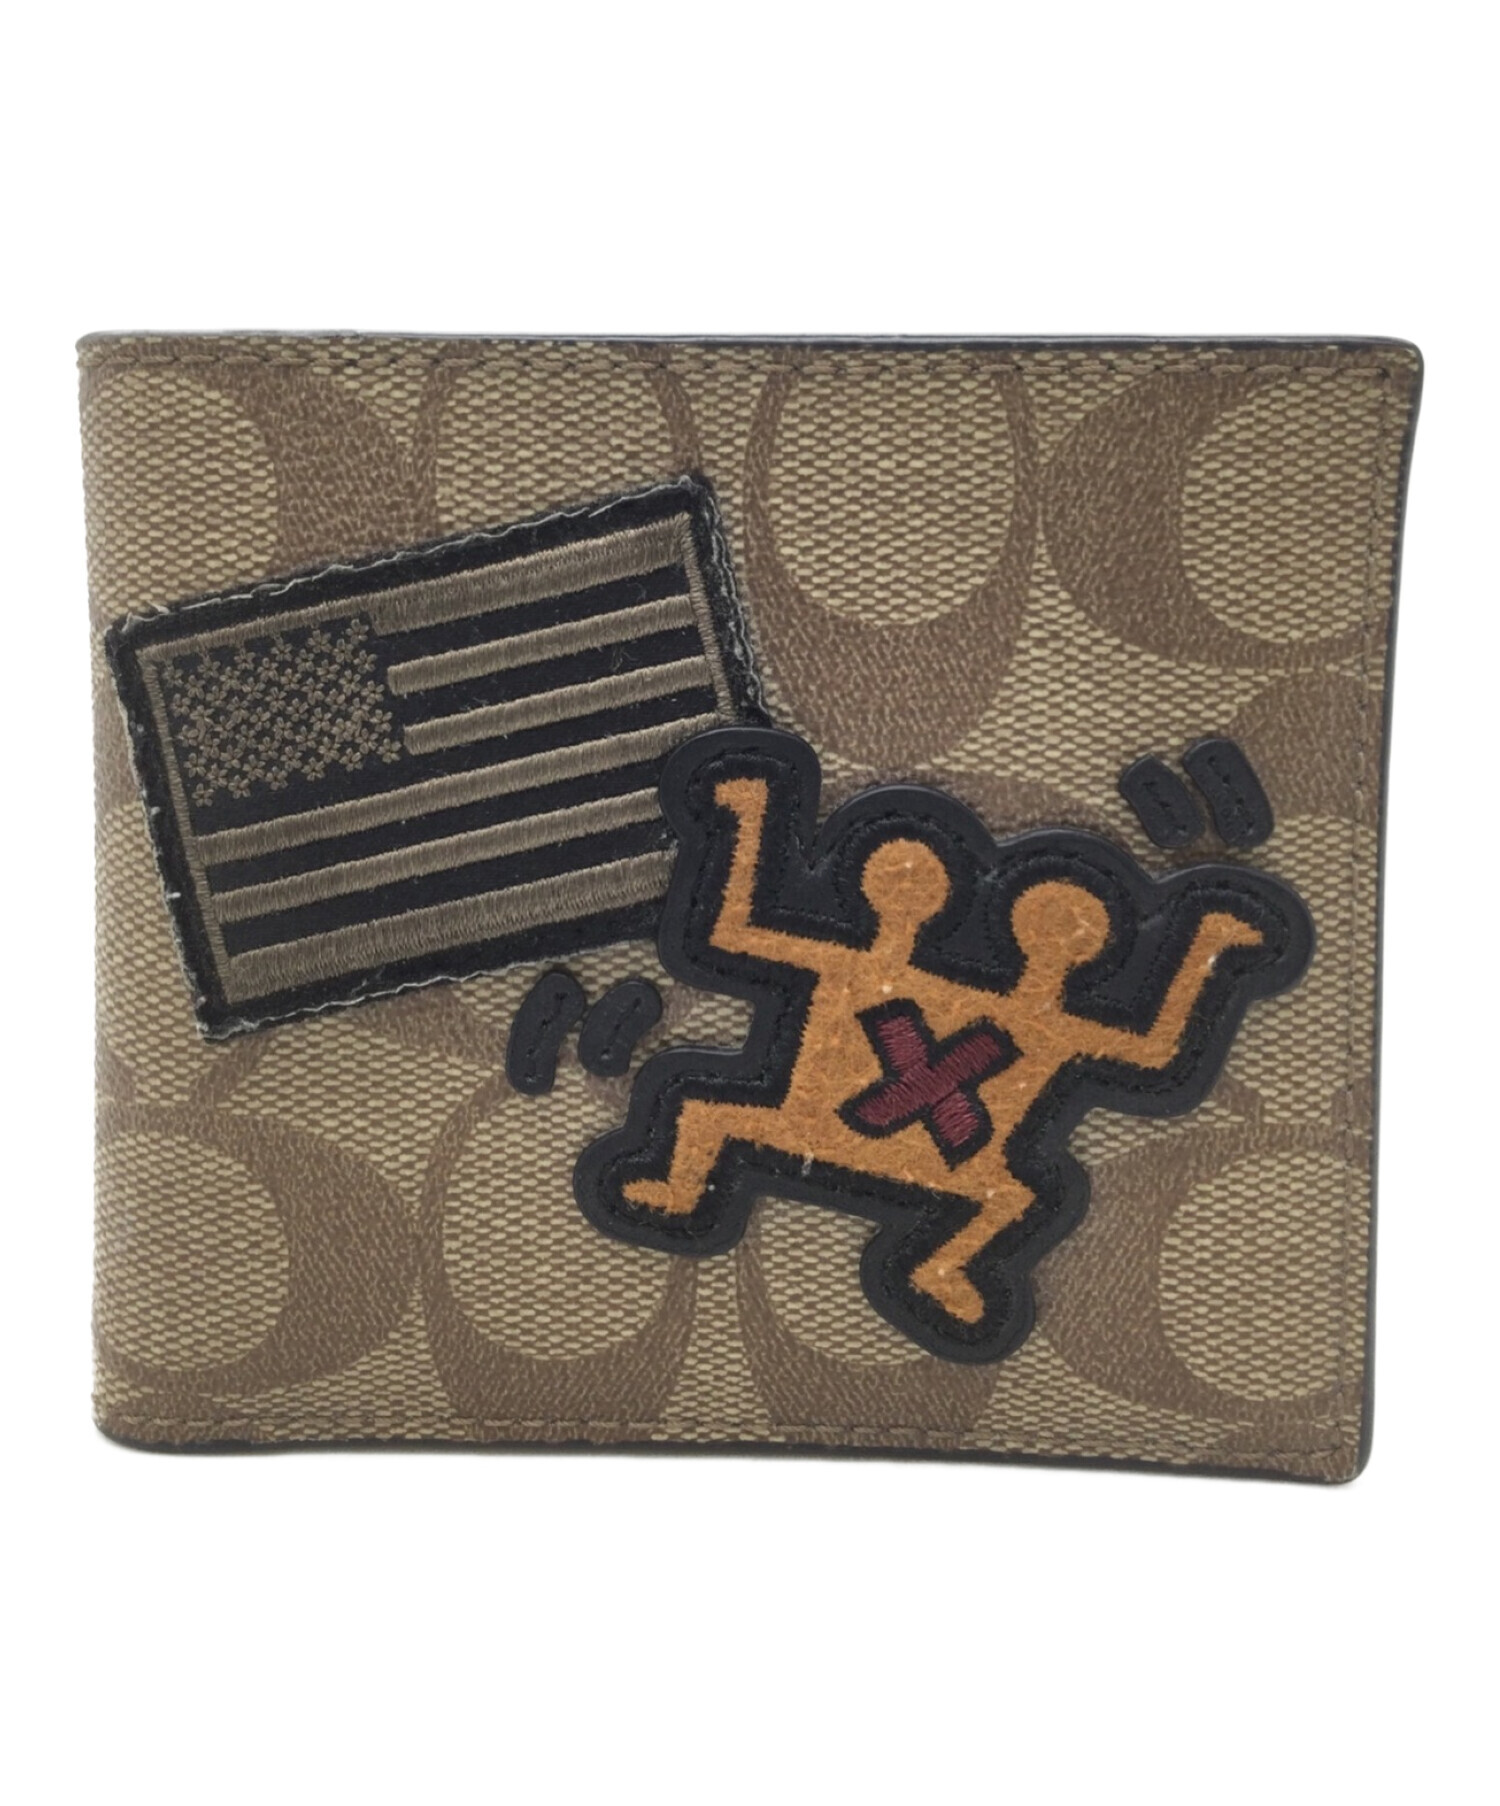 COACH (コーチ) Keith Haring (キースヘリング) シグネチャー 2つ折り財布 グリーン